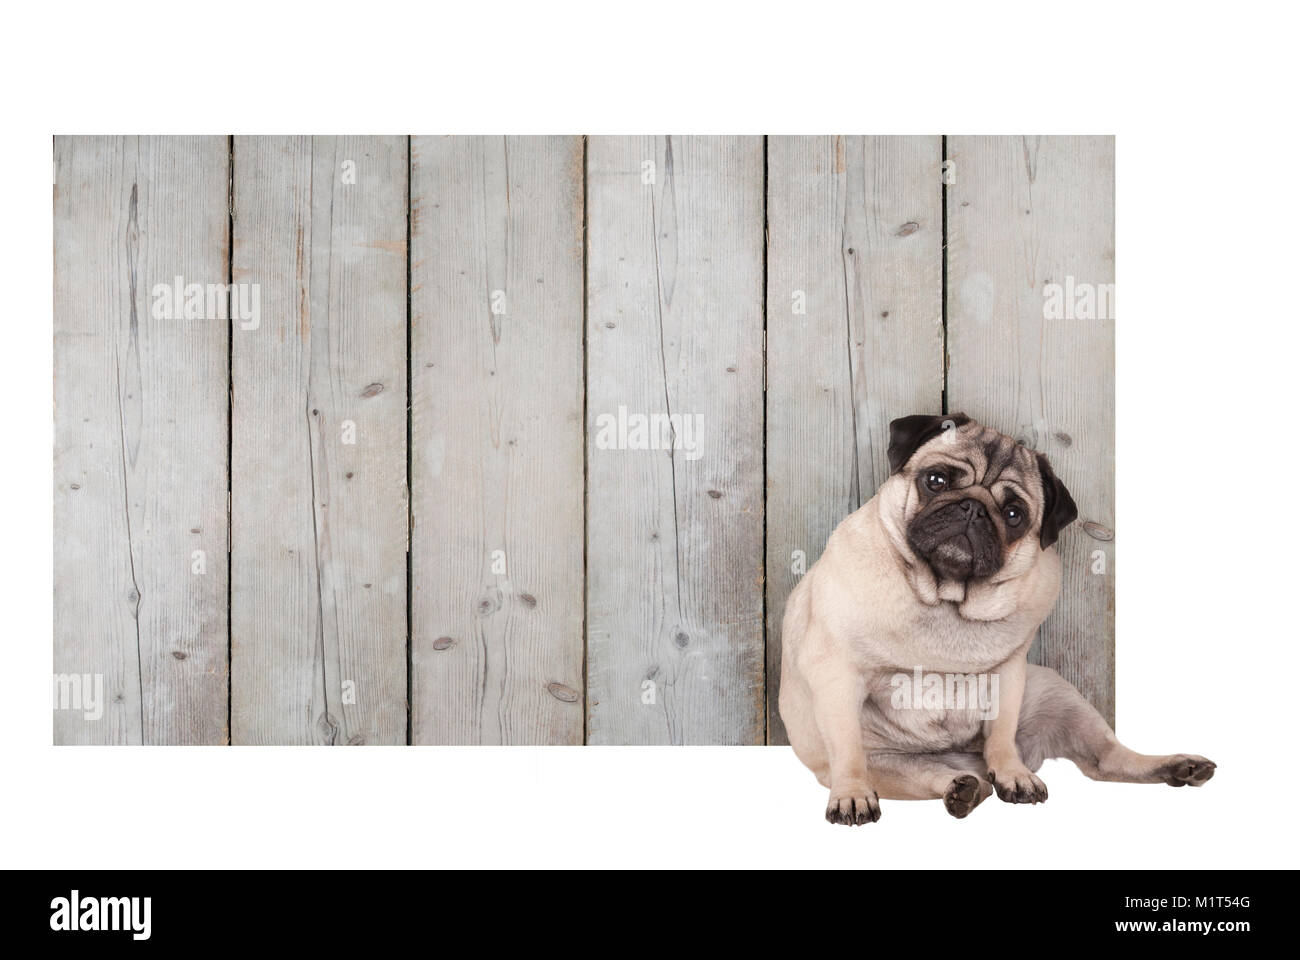 Carino pug cucciolo di cane seduto di fronte a vuoto di recinzione in legno segno promozionali di impalcature in legno, isolati su sfondo bianco Foto Stock